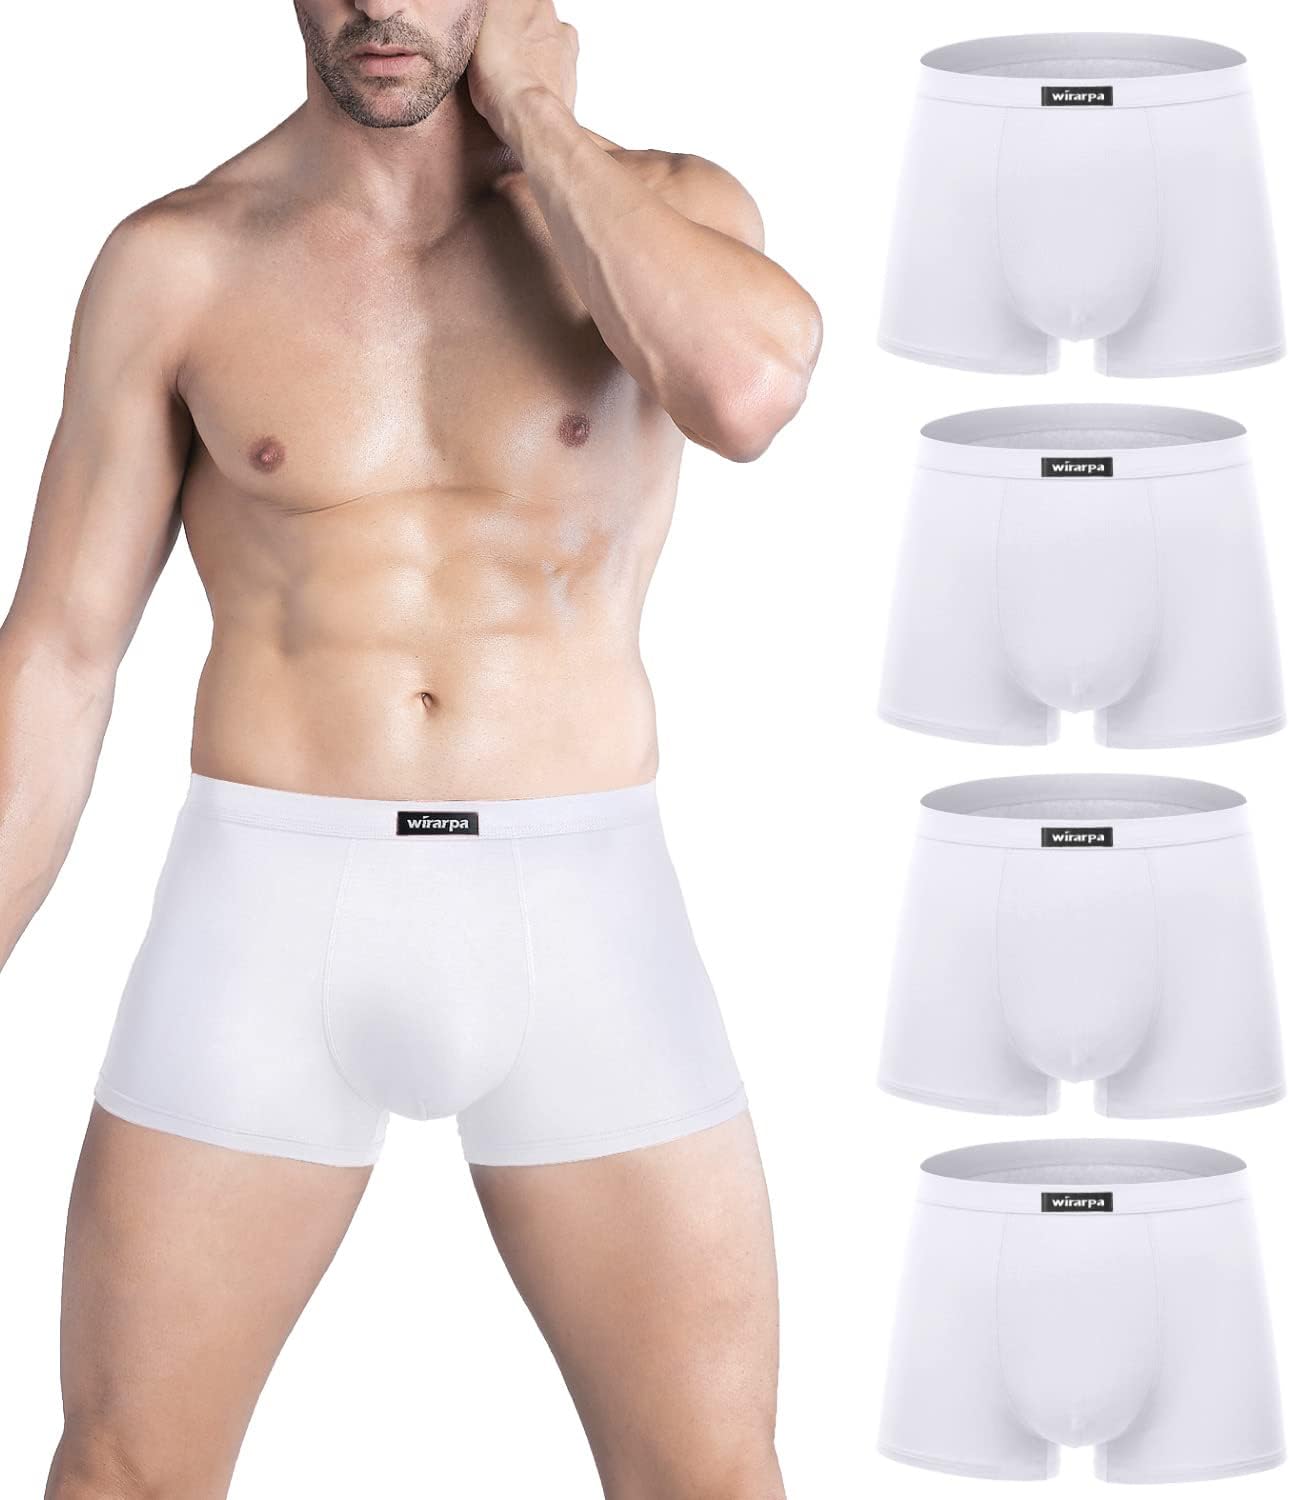 Wirarpa wirarpa Men's Breathable Modal Microfiber Trunks Underwear